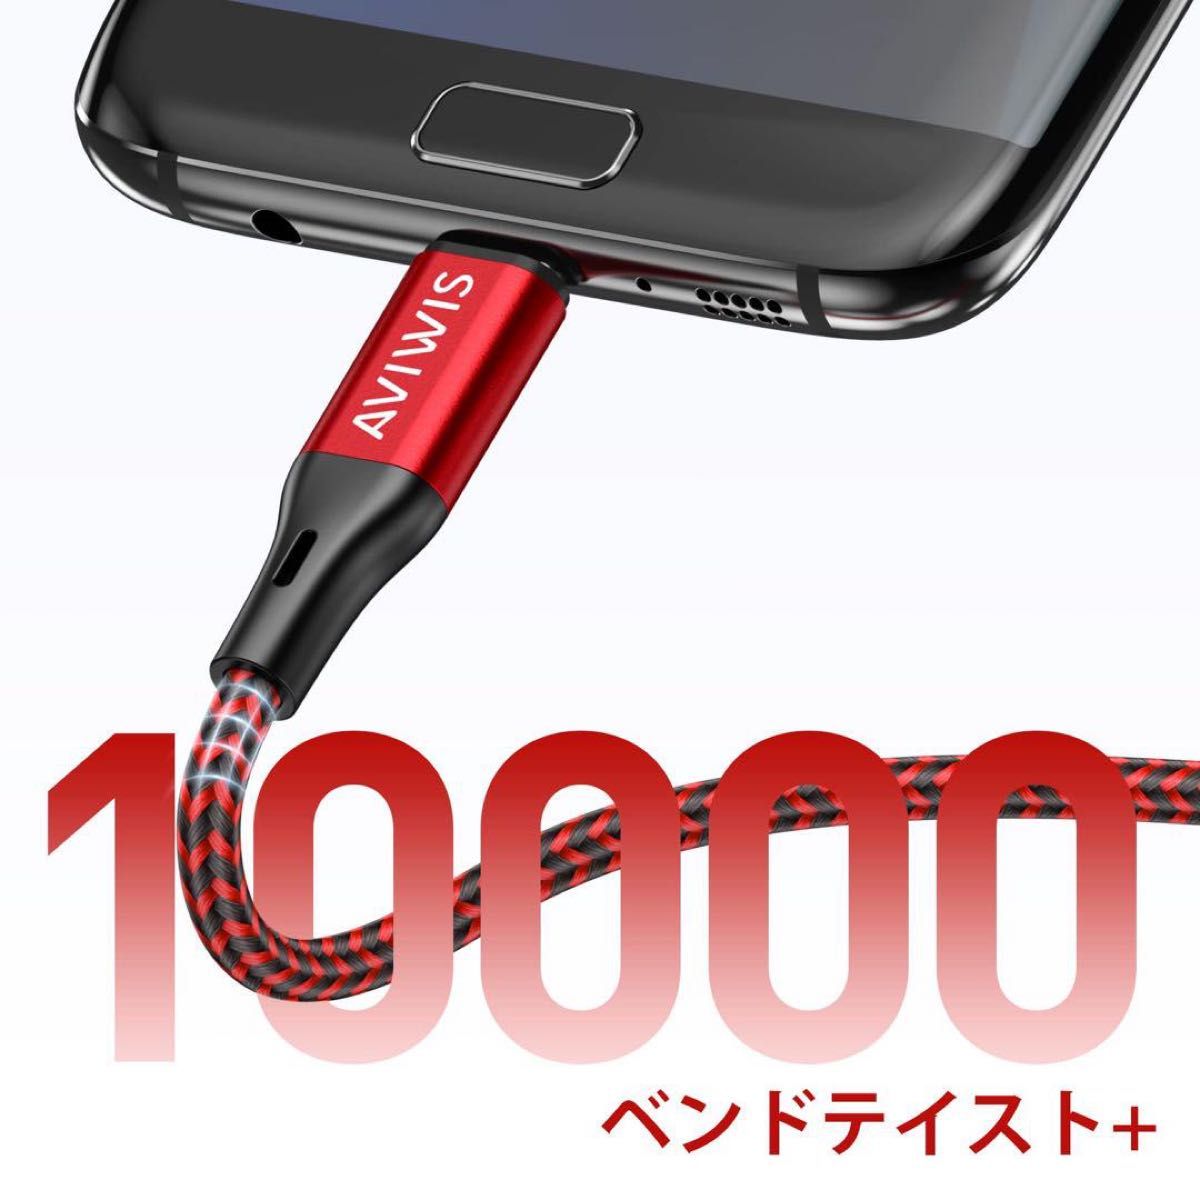 マイクロ USB ケーブル 急速充電ケーブル【2M/3本セット】Android